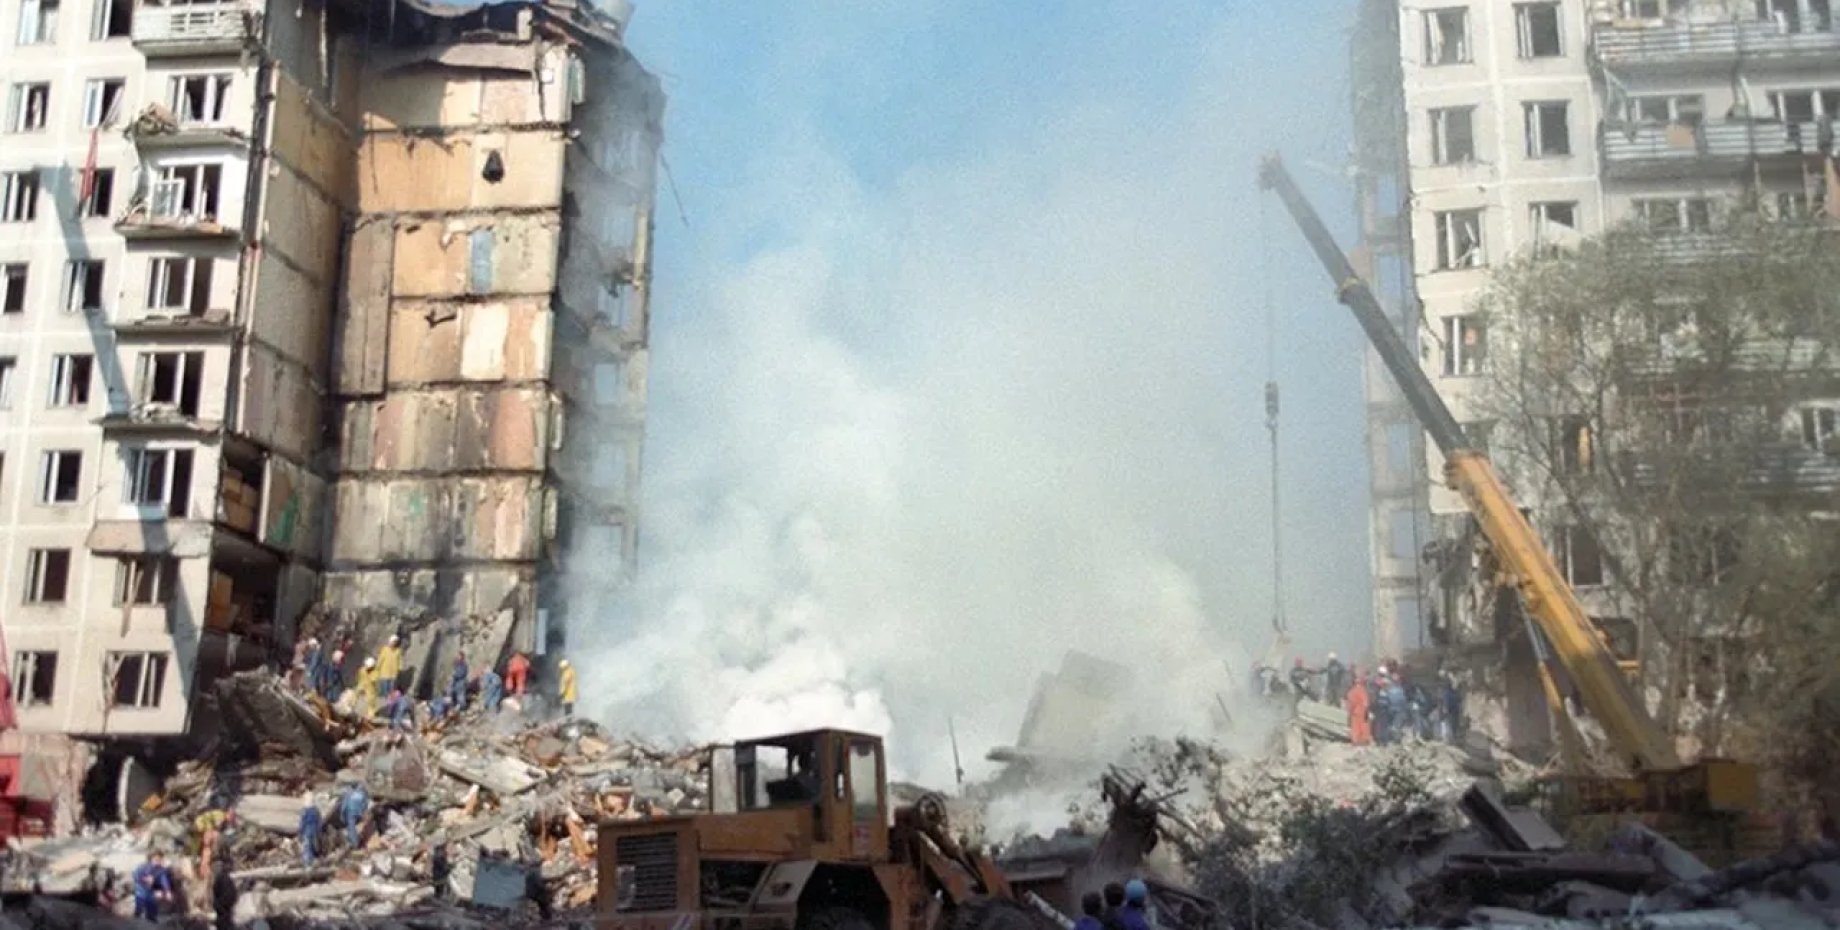 Взорвали дома в москве каком году. Взрывы на каширке и Гурьянова 1999. Взрыв в Москве на улице Гурьянова в 1999 году. Теракт на улице Гурьянова 1999. Взрыв дома на улице Гурьянова 1999.